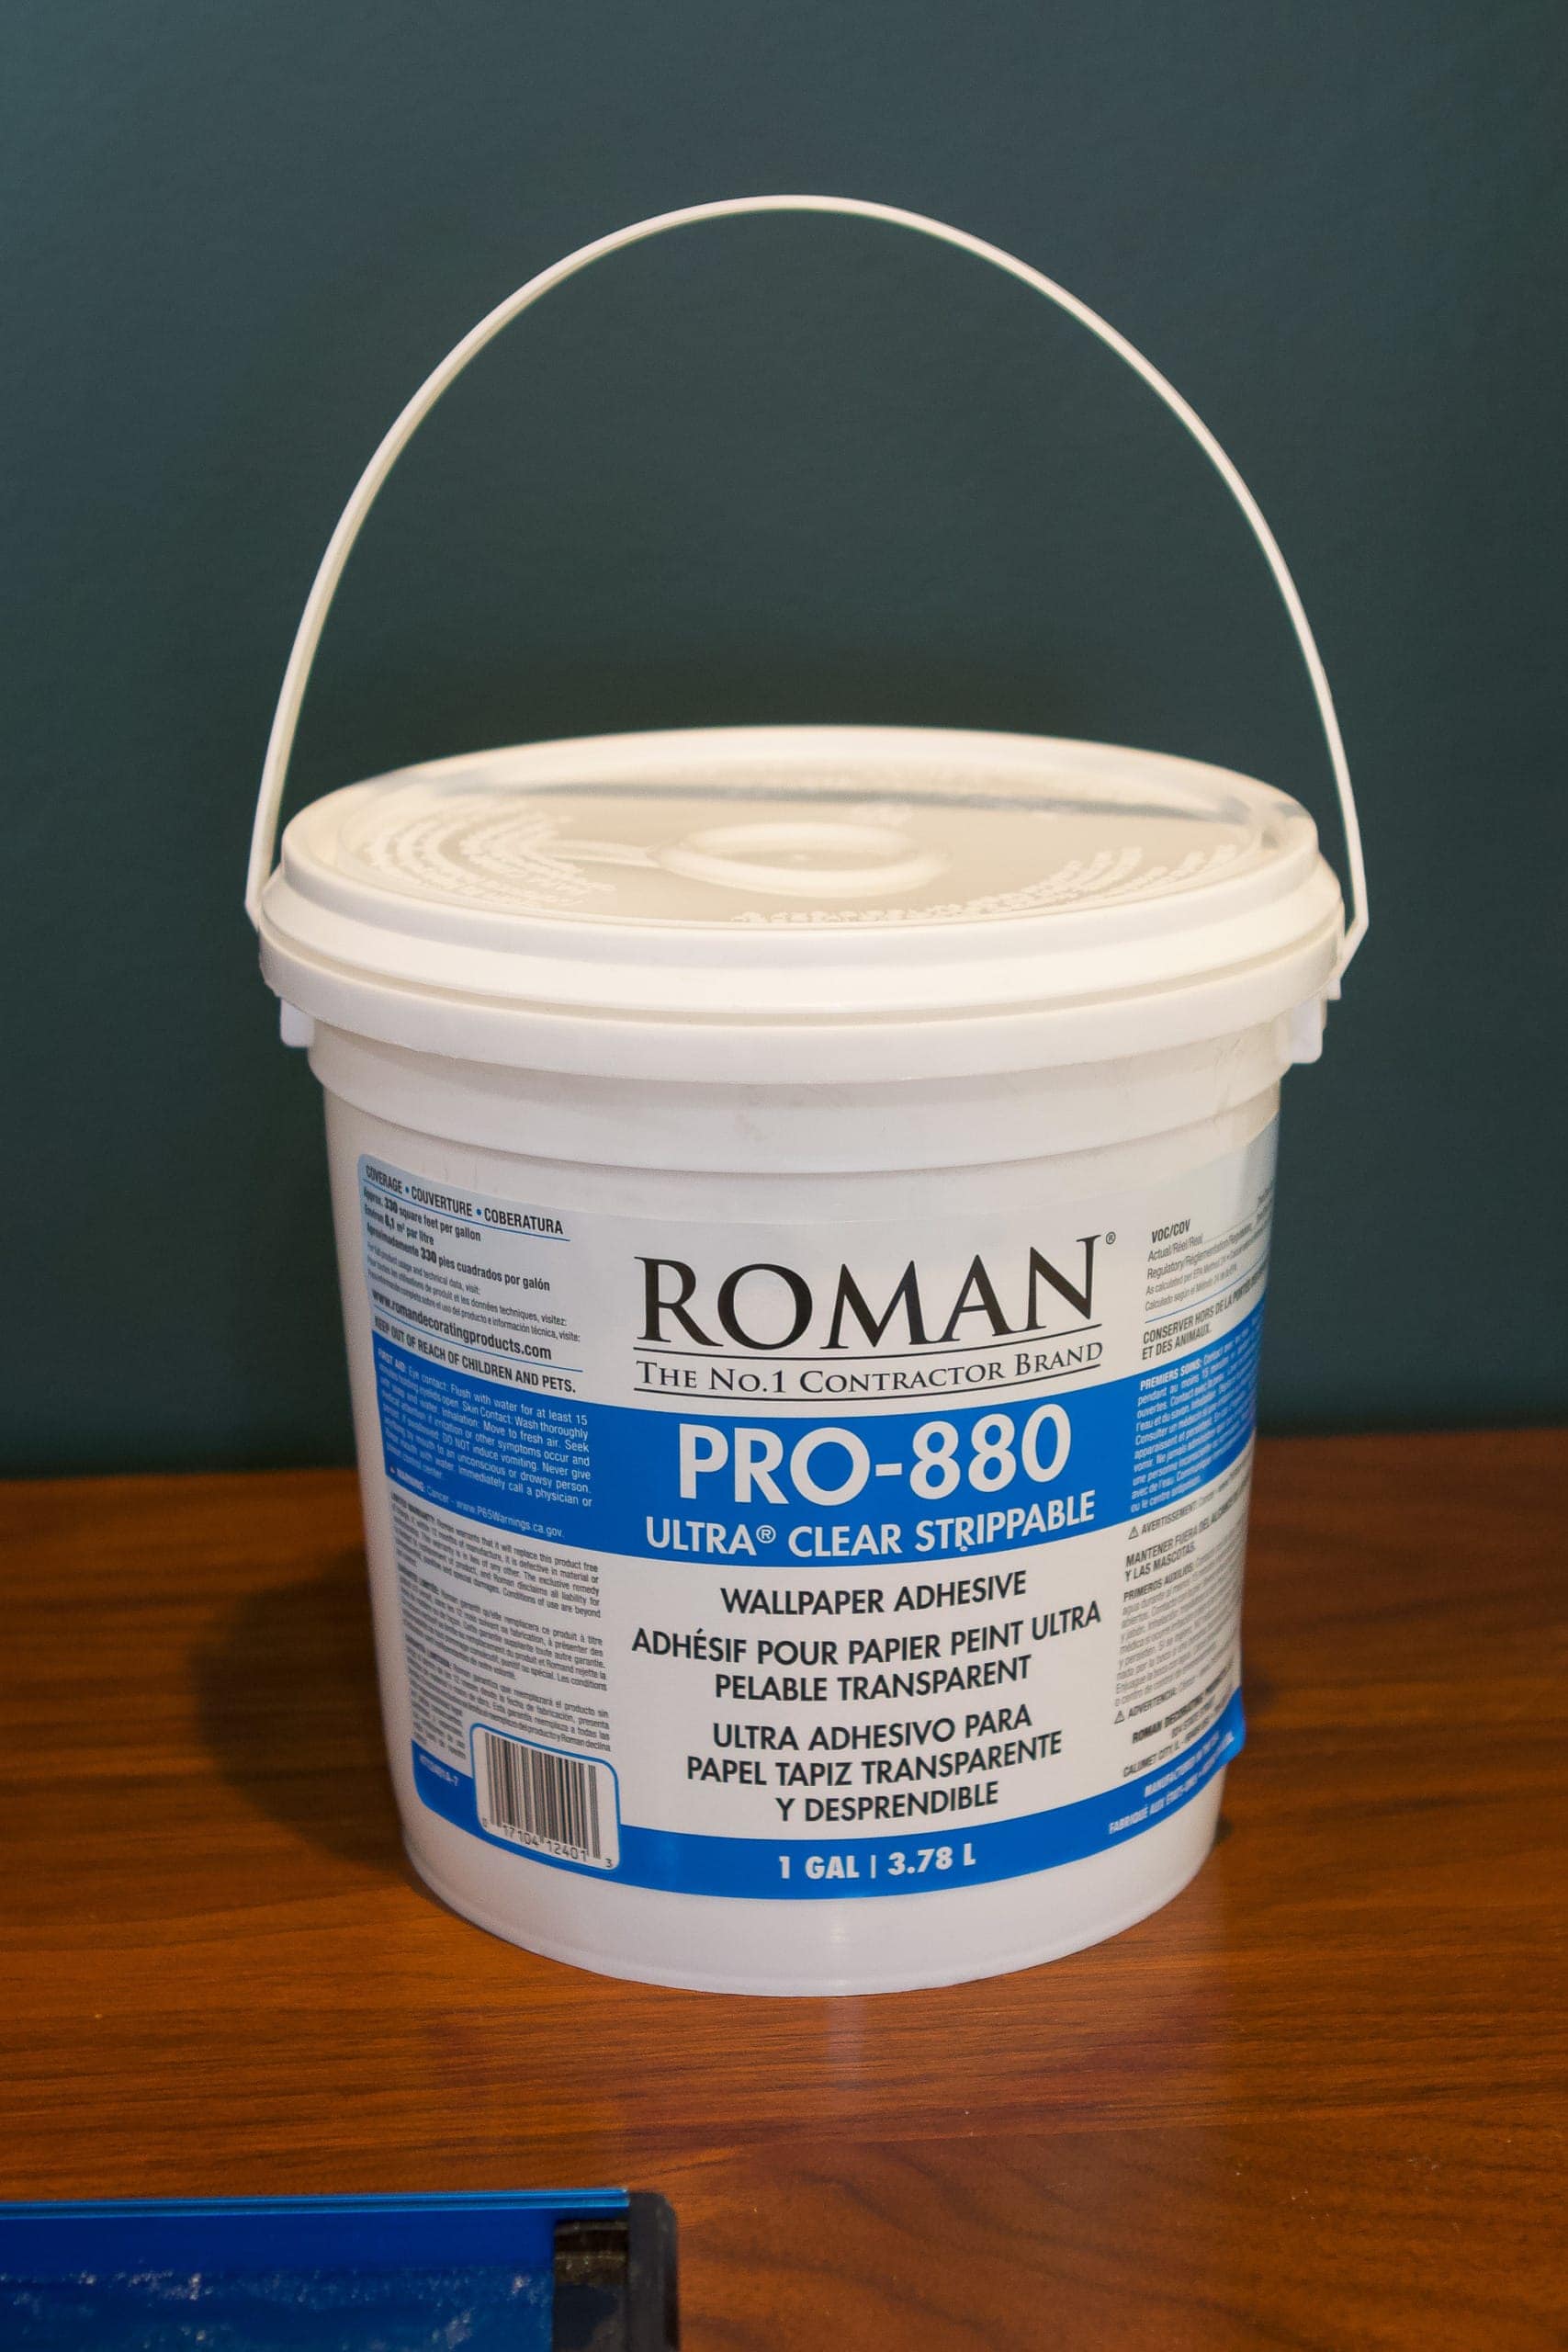 Roman pro 880 glue when you wallpaper